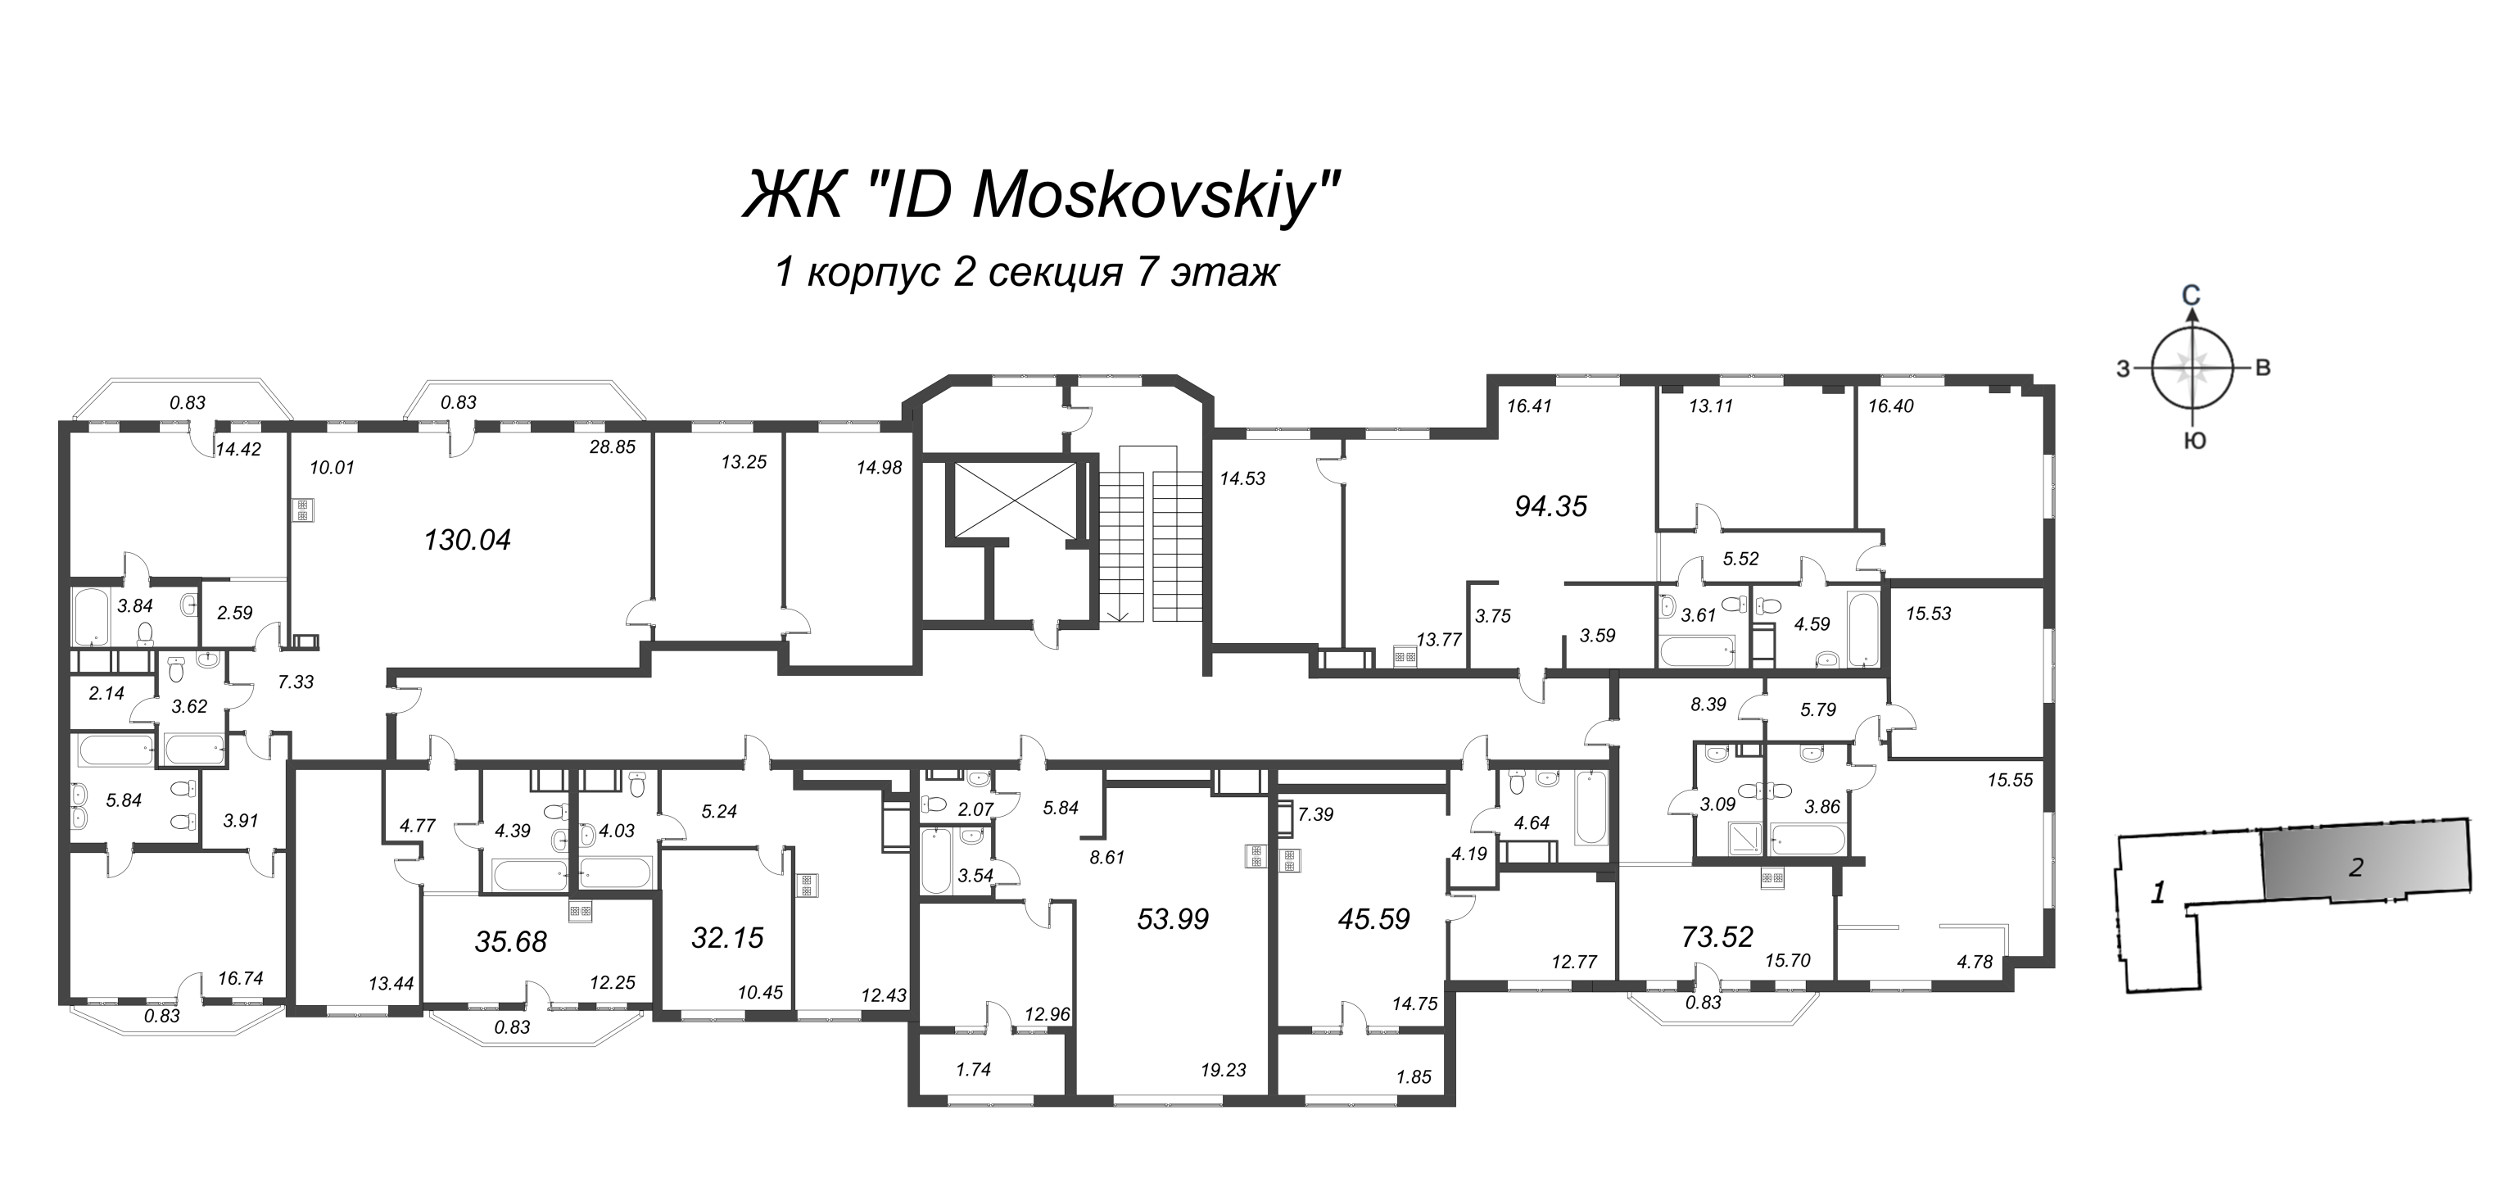 2-комнатная (Евро) квартира, 53.99 м² в ЖК "ID Moskovskiy" - планировка этажа